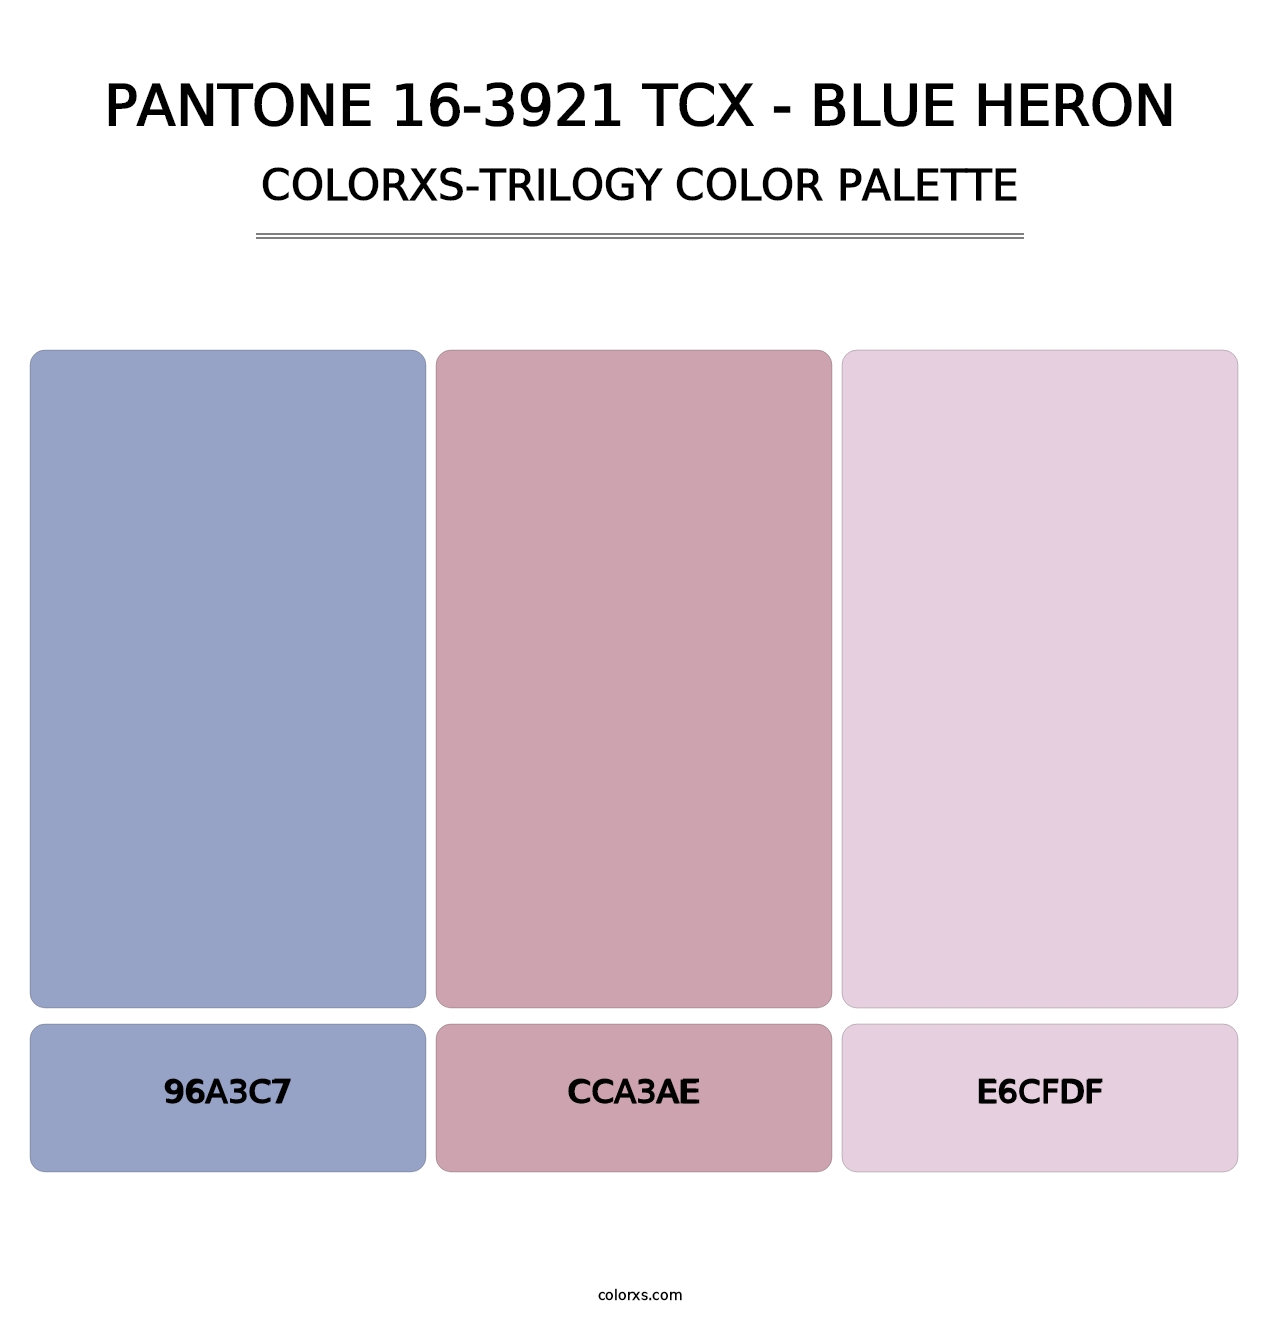 PANTONE 16-3921 TCX - Blue Heron - Colorxs Trilogy Palette